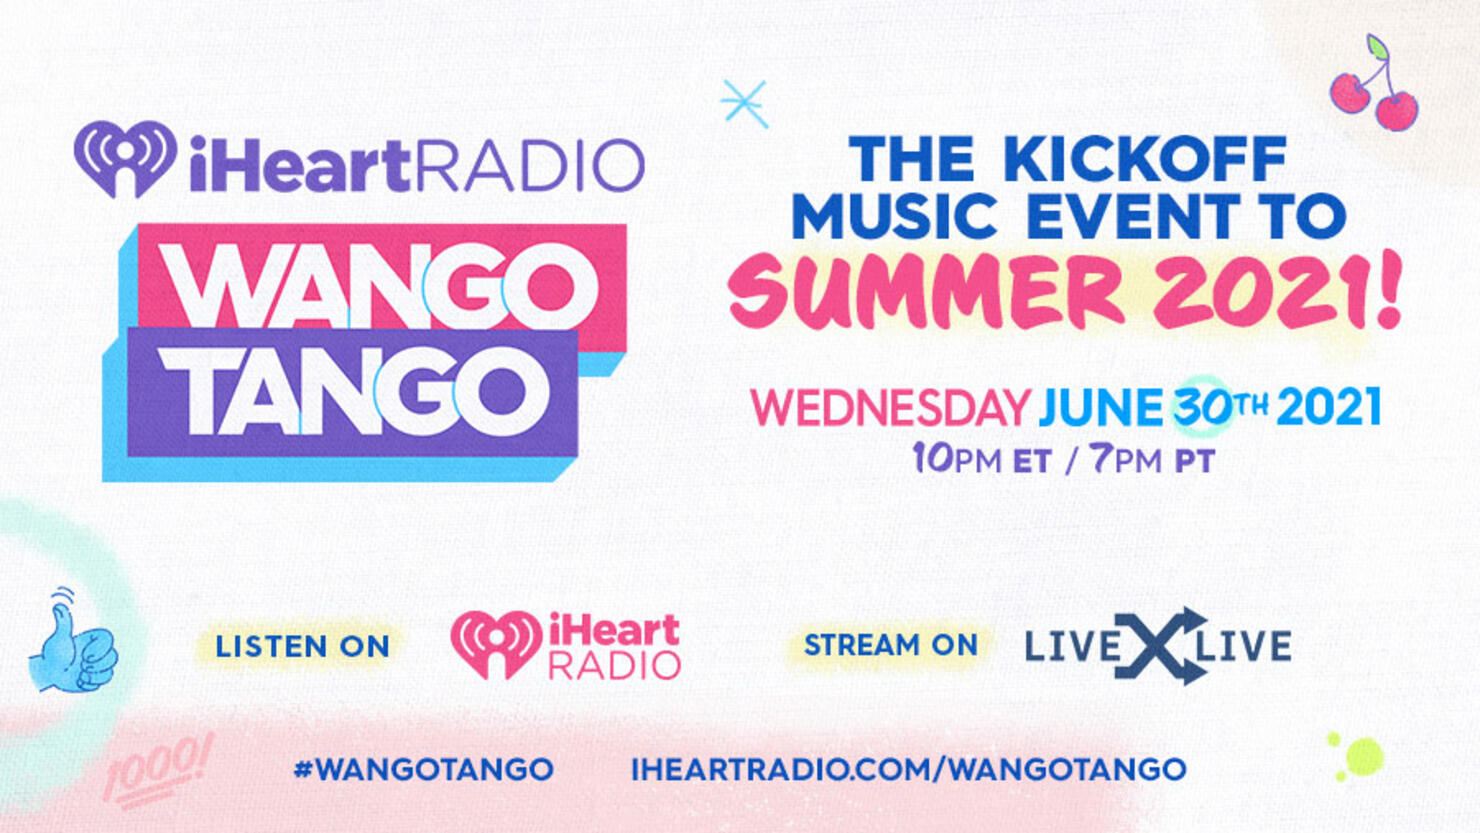 iHeartRadio Wango Tango